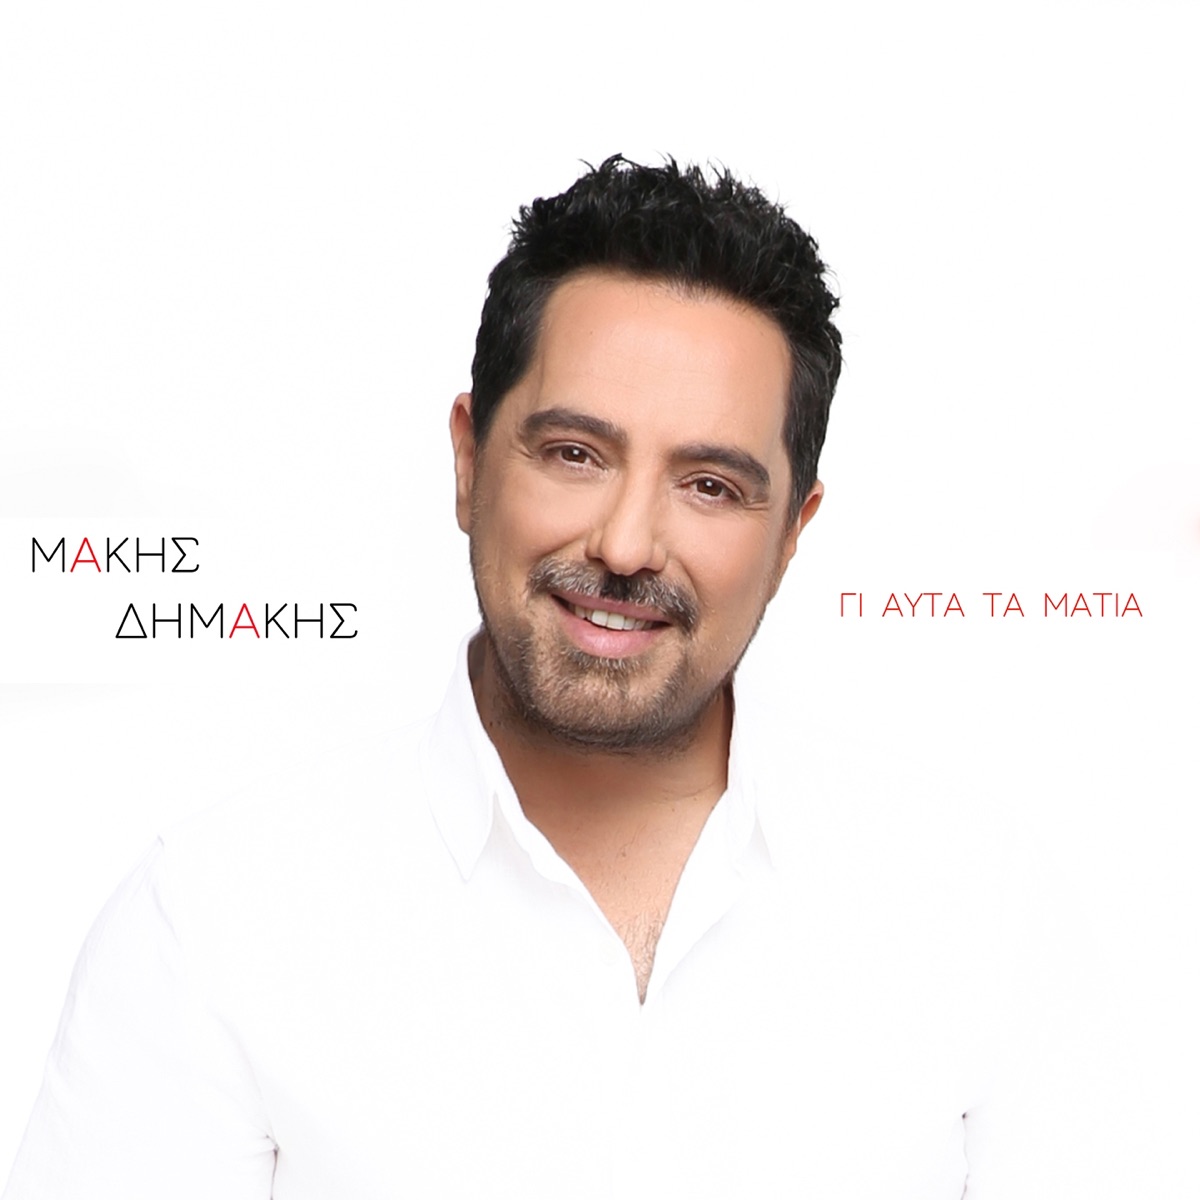 Gi' Afta Ta Matia - Single - Album by Makis Dimakis - Apple Music